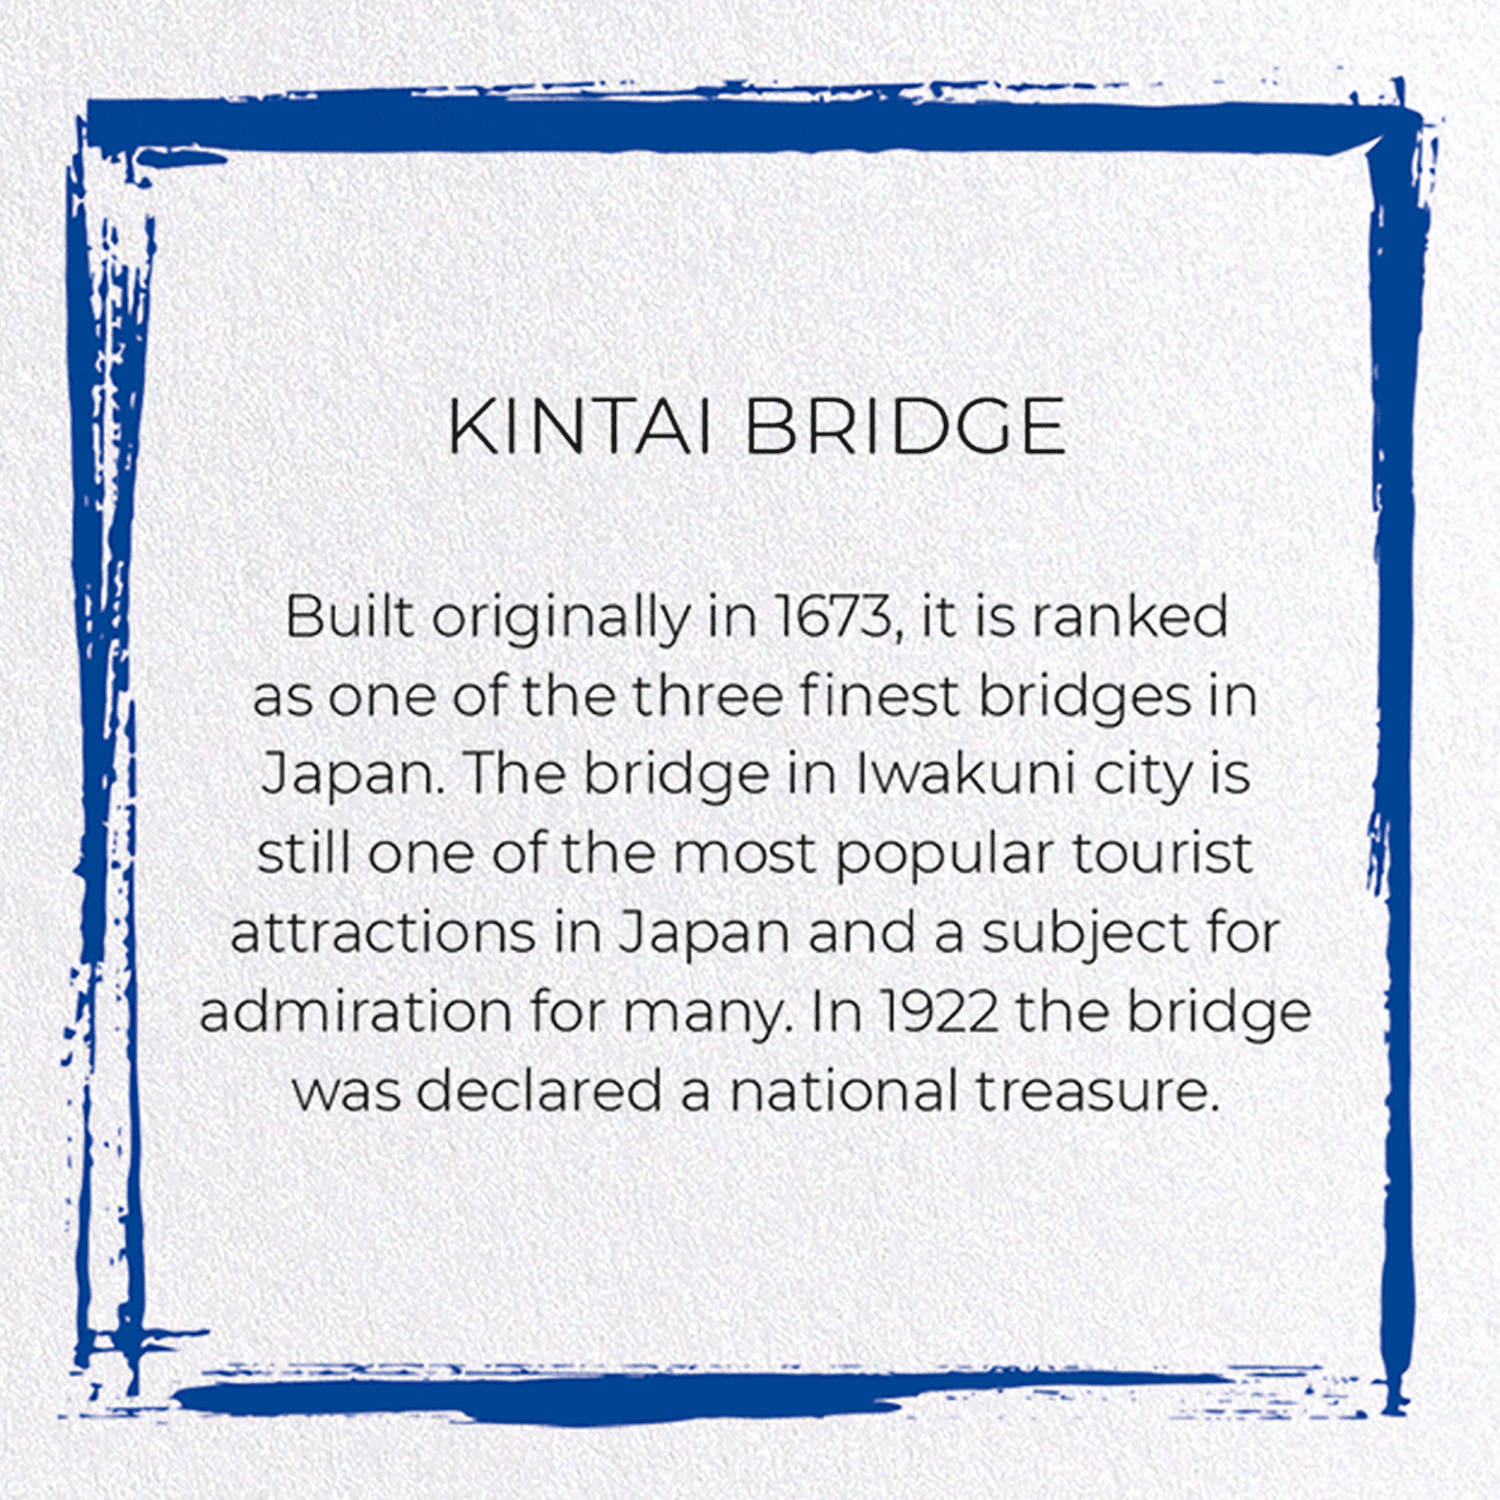 KINTAI BRIDGE